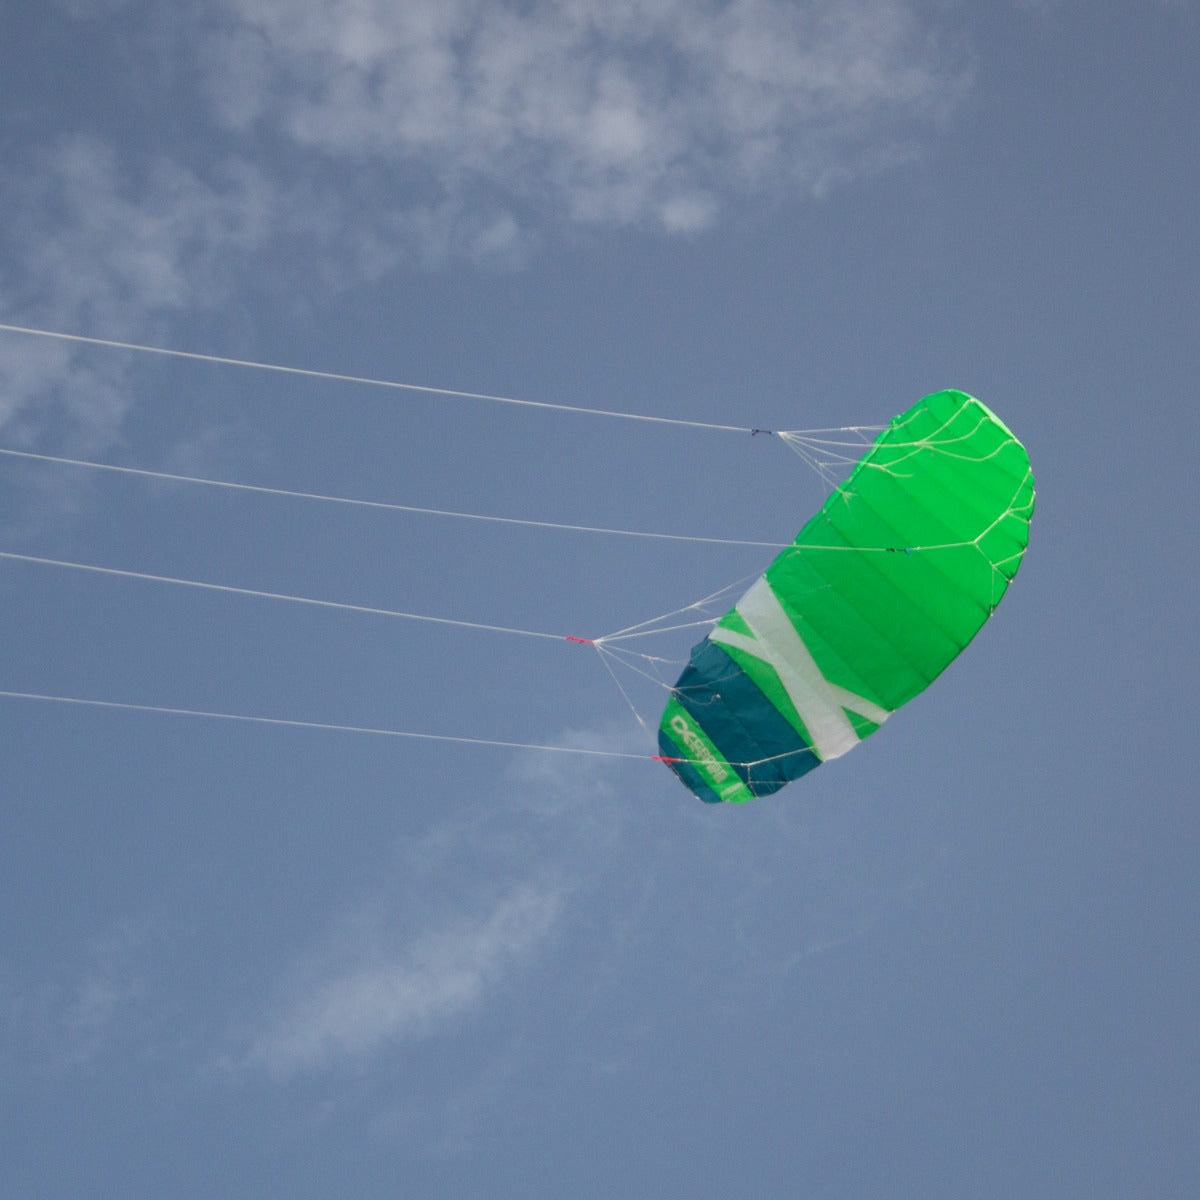 CrossKites Quattro 4.5 Green Lenkmatte Vierleiner Lenkdrachen Kite Flugdrachen R2F